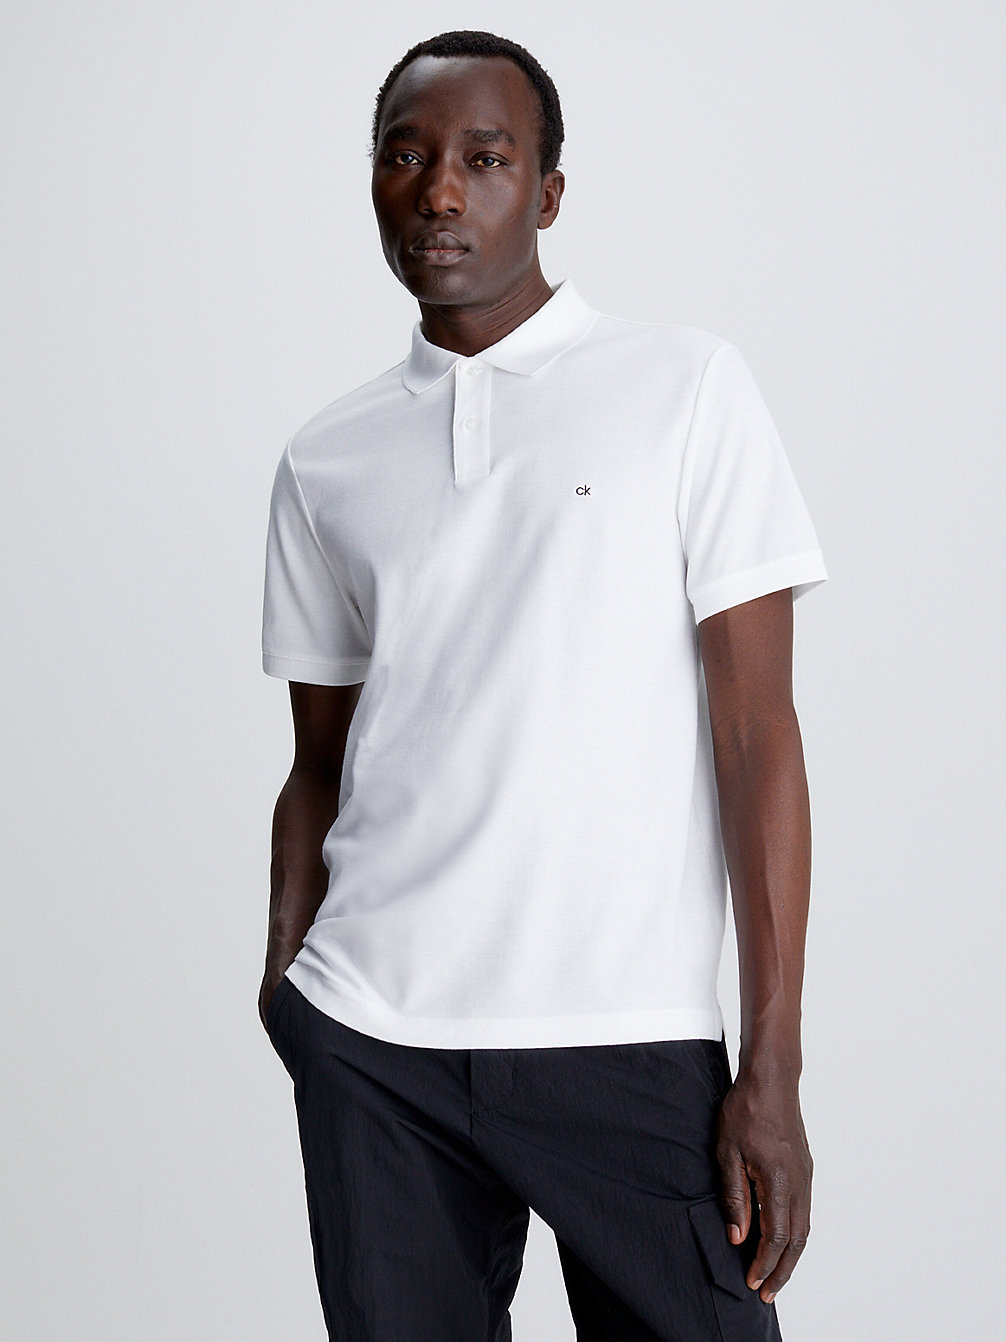 PERFECT WHITE > Wąska Koszulka Polo Z Piki Bawełnianej > undefined Mężczyźni - Calvin Klein